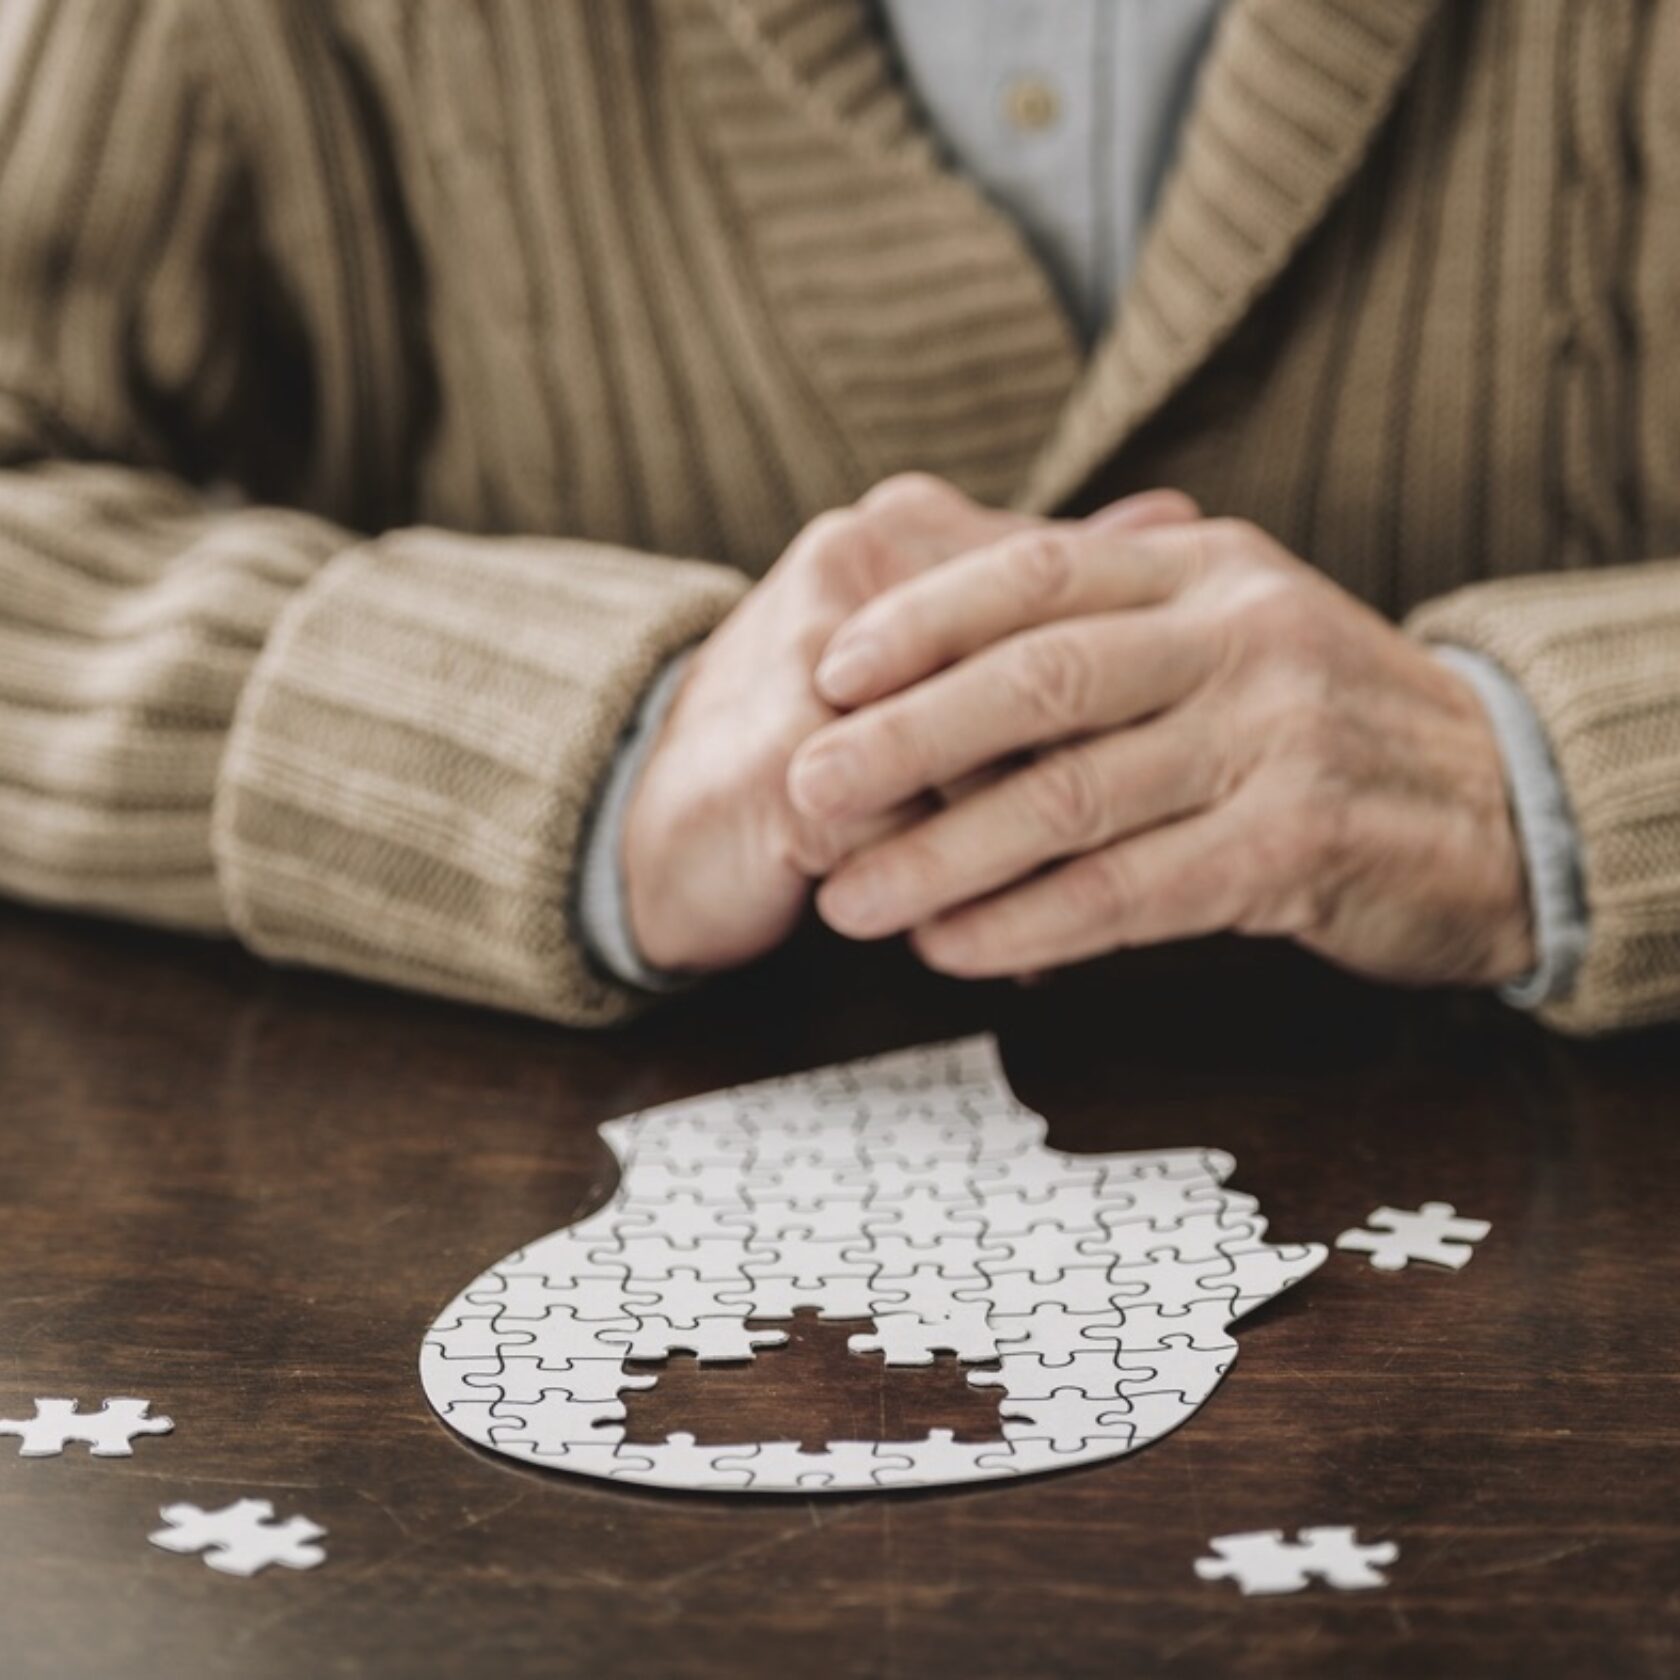 Senior sitzt mit gefalteten Händen vor dem Puzzle eines menschlichen Kopfes und hat Schwierigkeiten es zu vollenden